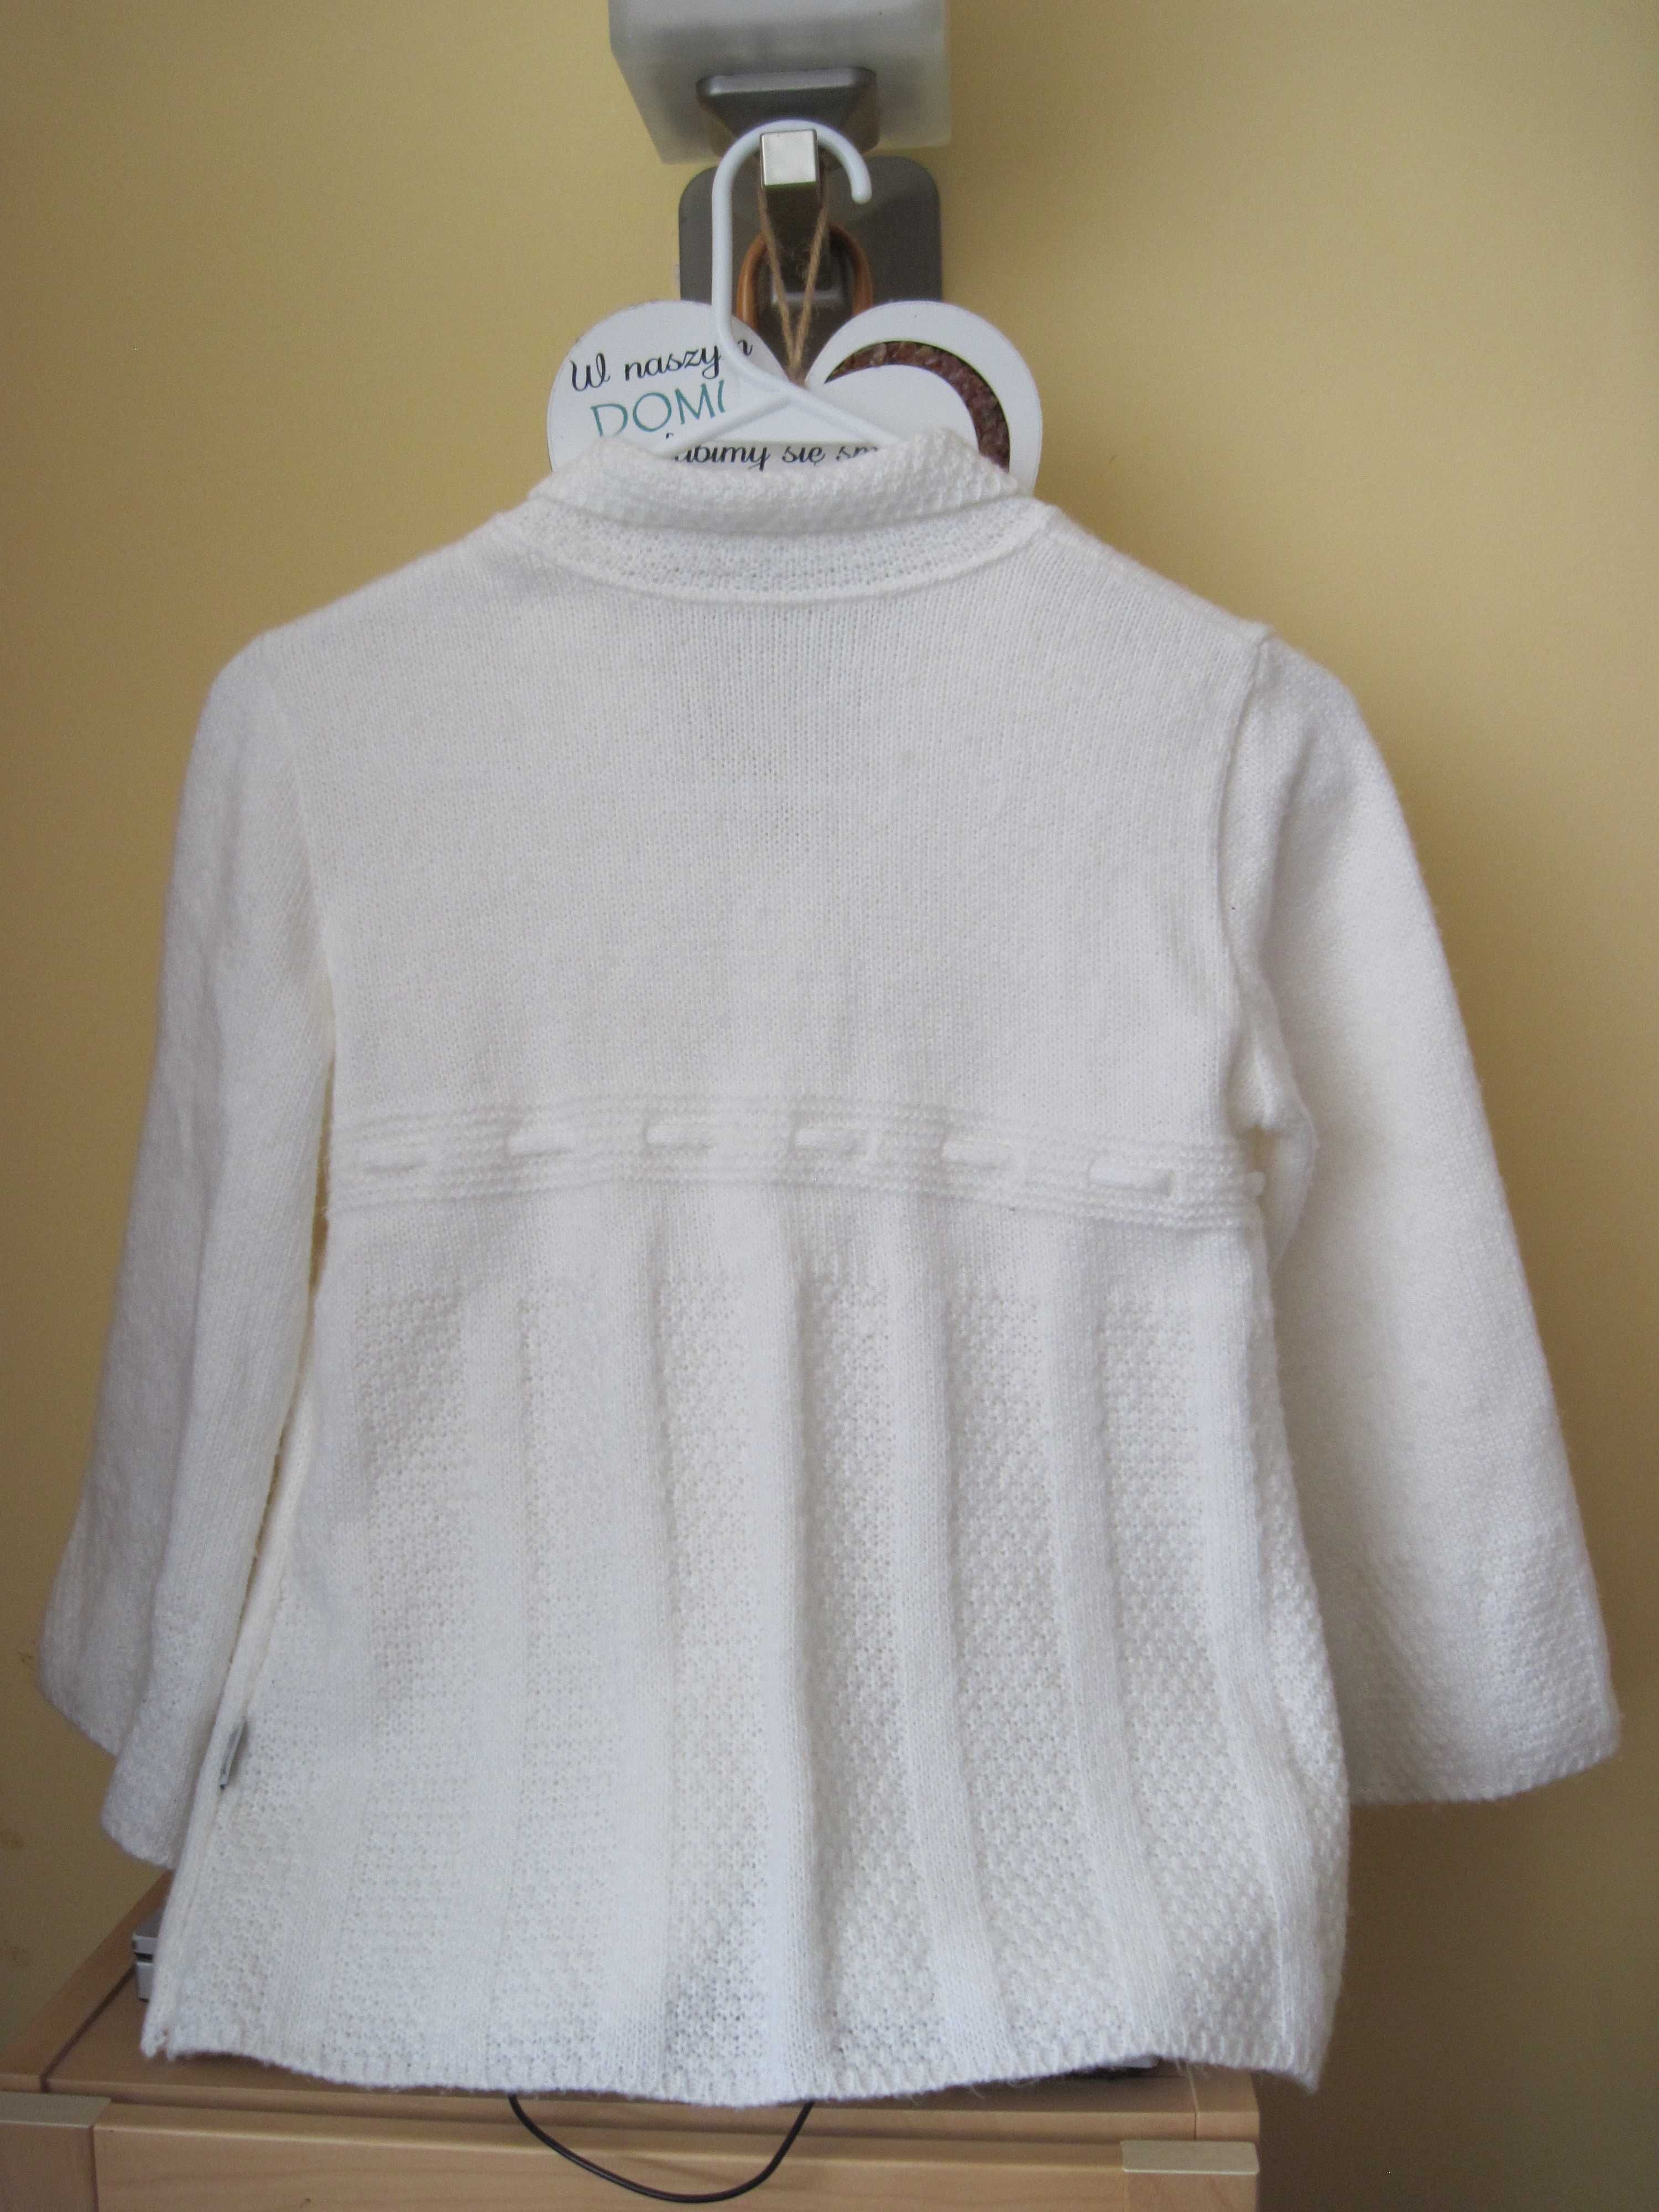 Sweter biały, bolerko na albę, sukienkę komunia, rozmiar 134